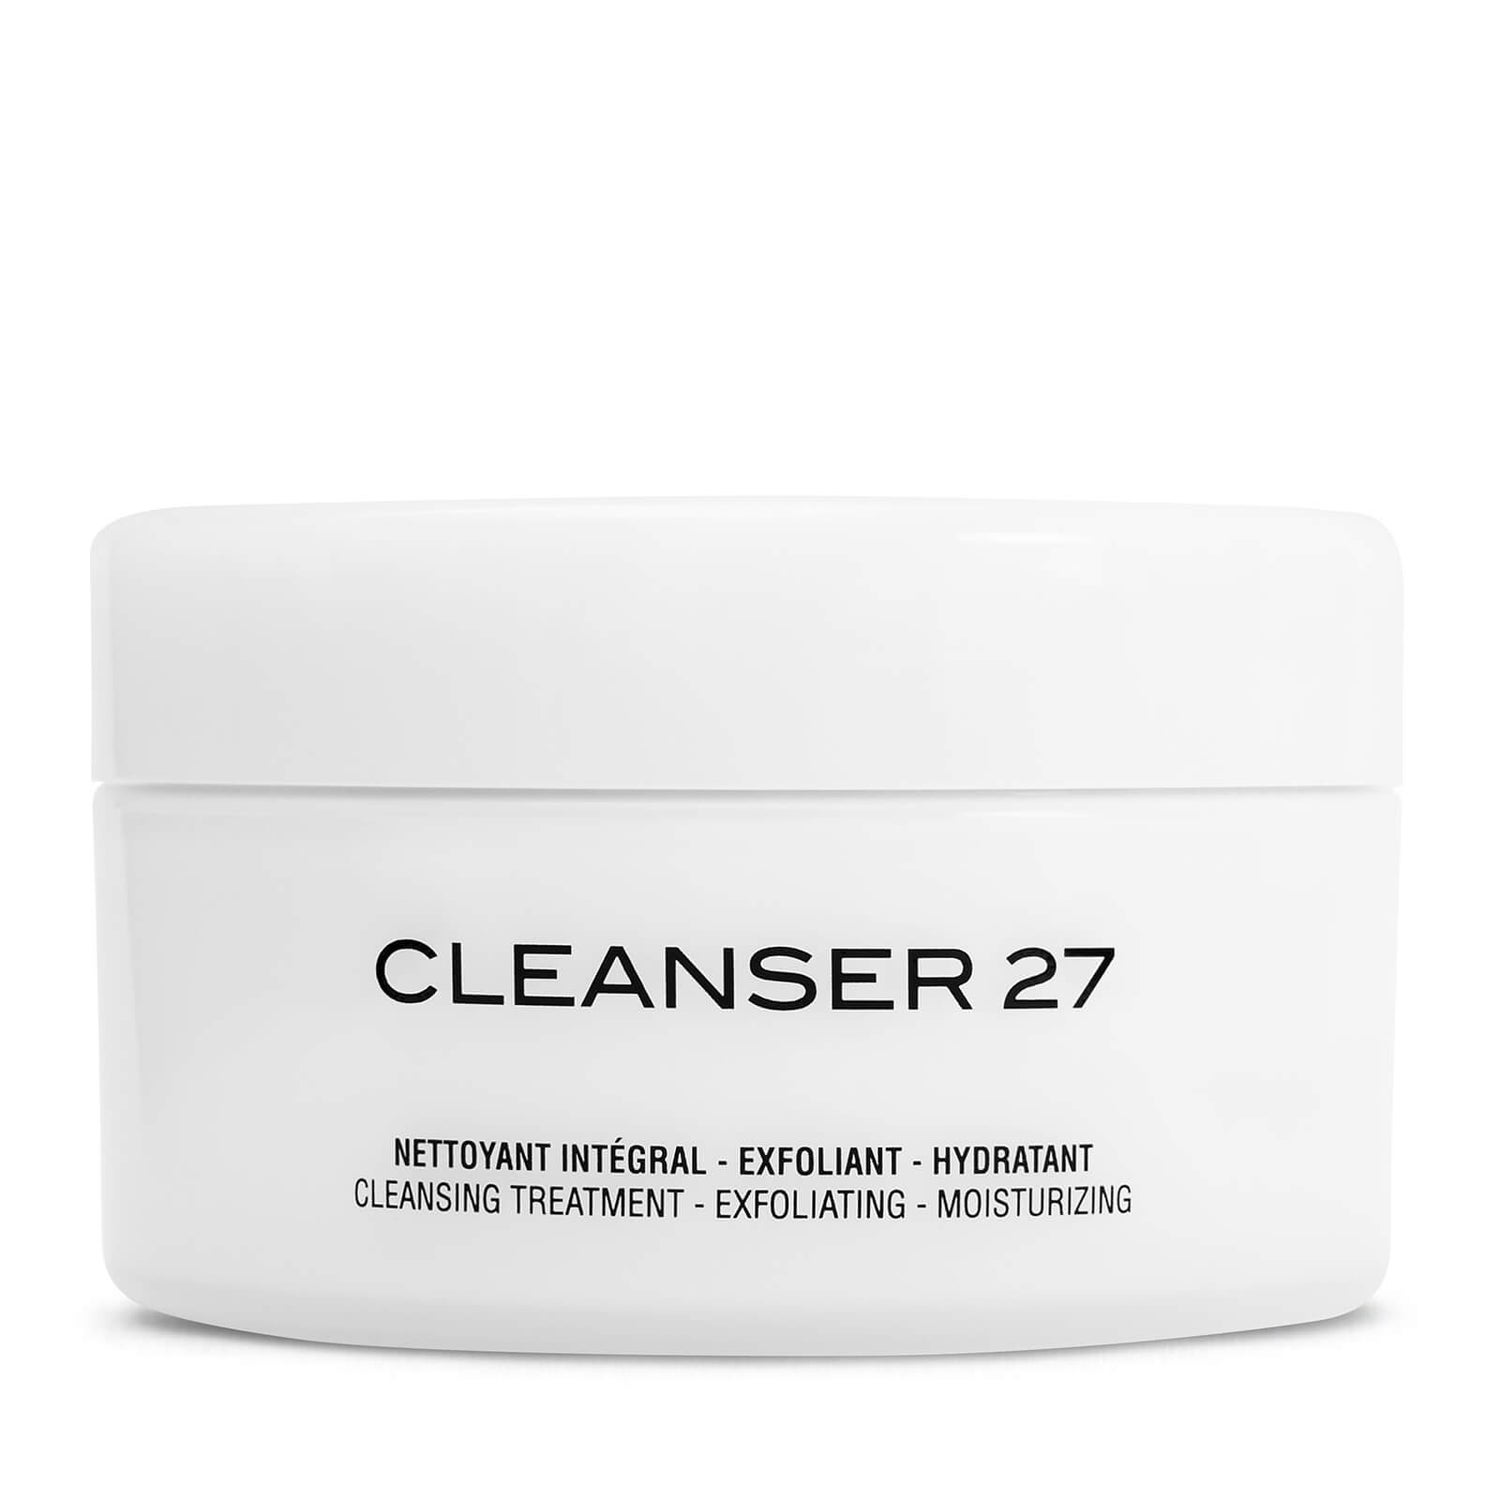 Bálsamo limpiador celular biorregulador Cosmetics 27 by ME Skinlab (125ml)